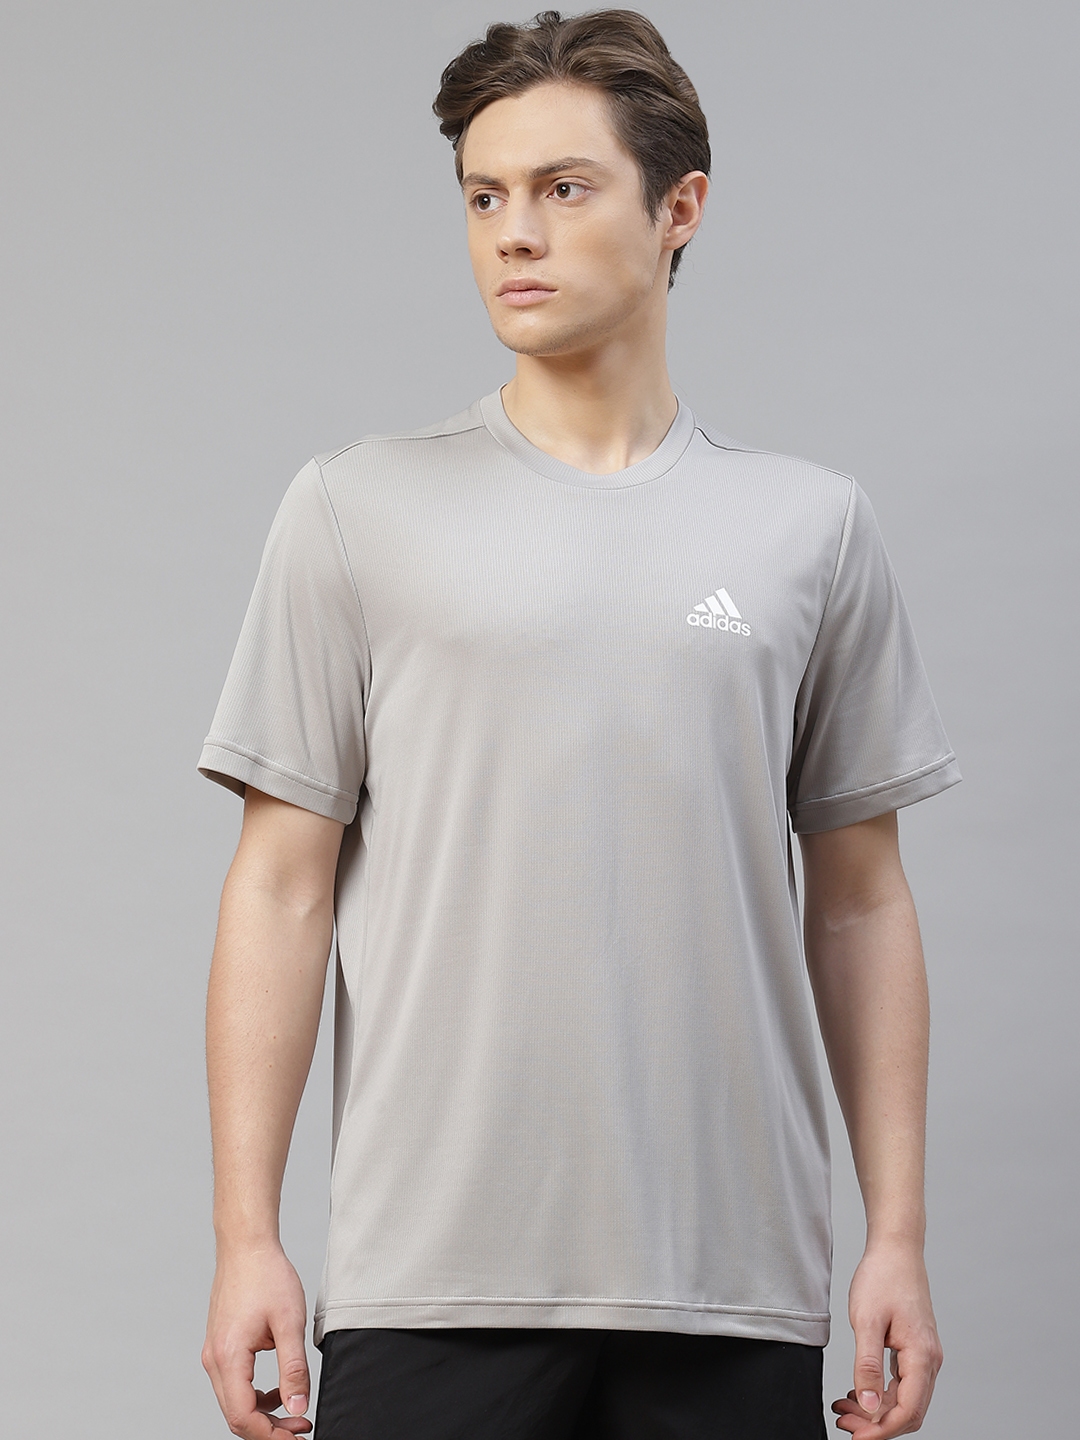 Buy ADIDAS Men Grey PL Solid Training T Shirt - Tshirts for Men ...